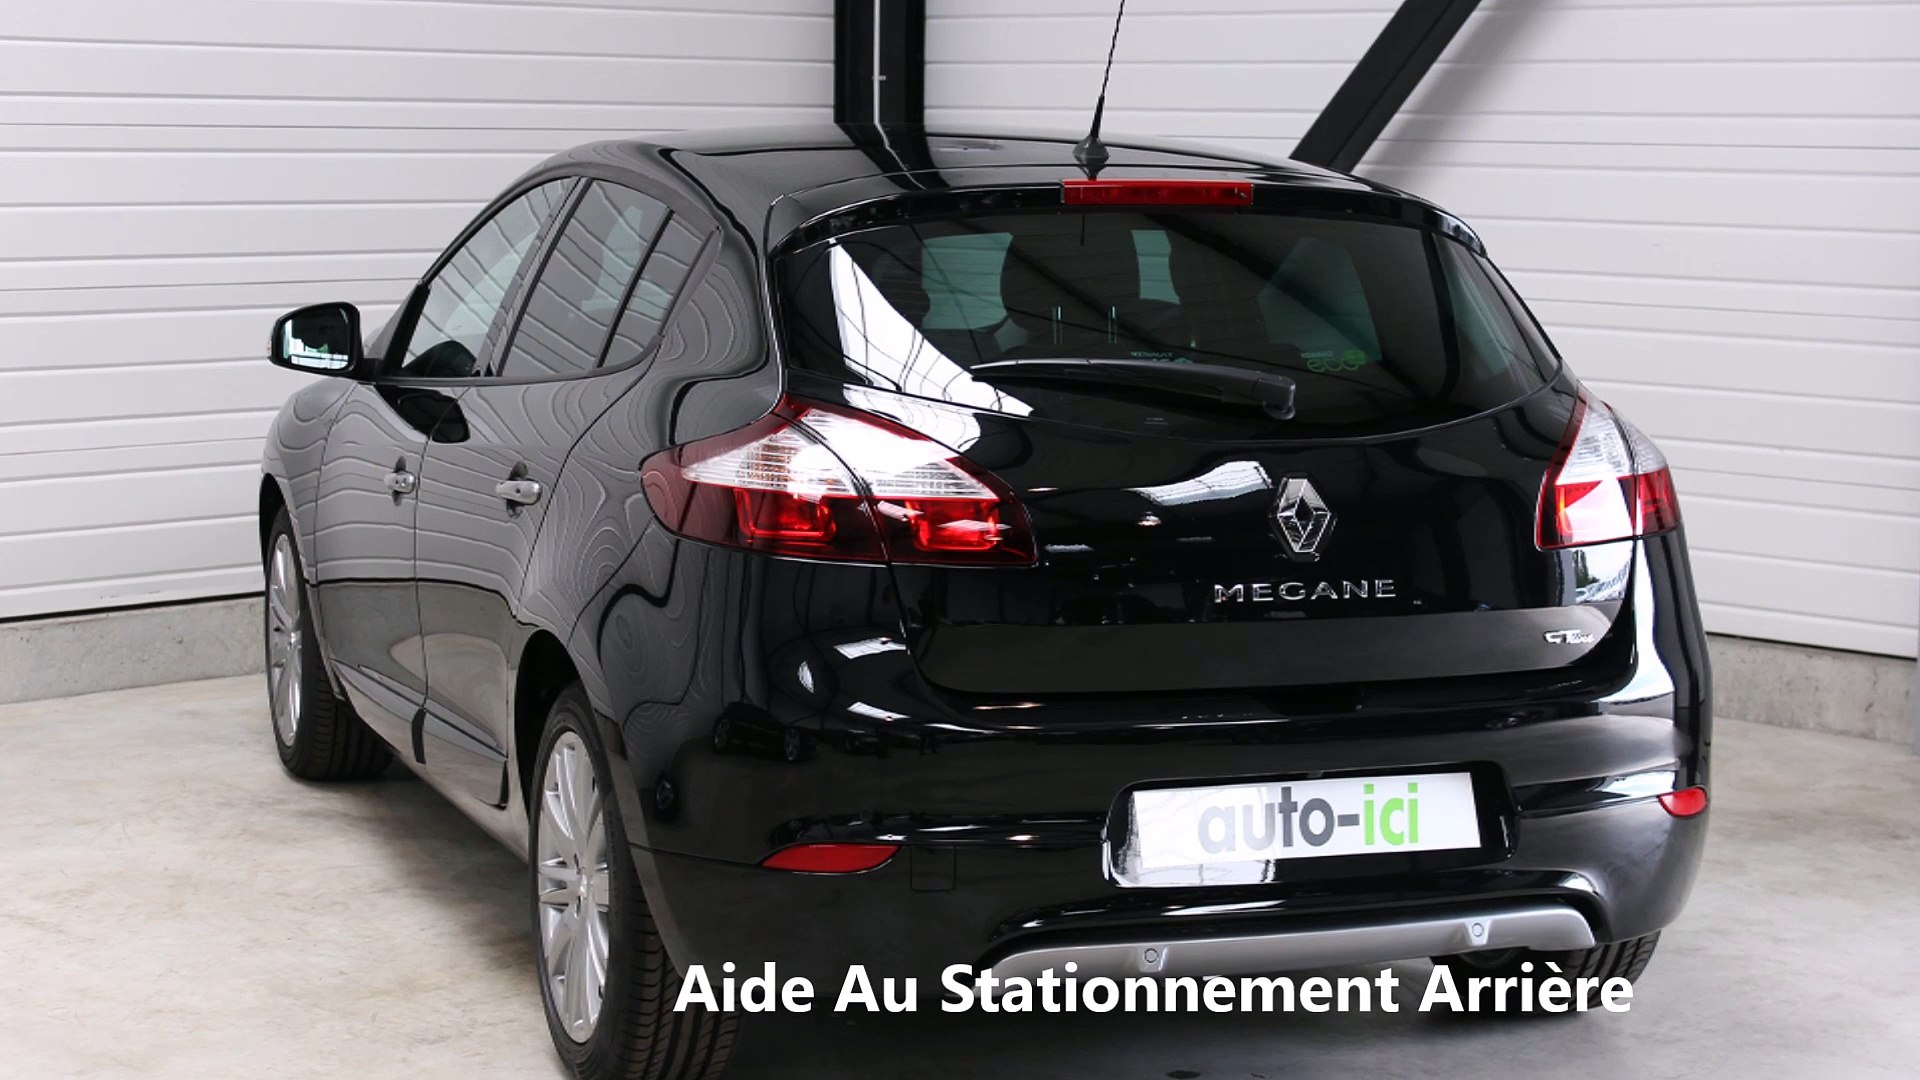 Vente Renault Mégane Nouvelle GT-Line 2015 Energy dCi 130 FAP pas chère ! -  Vidéo Dailymotion